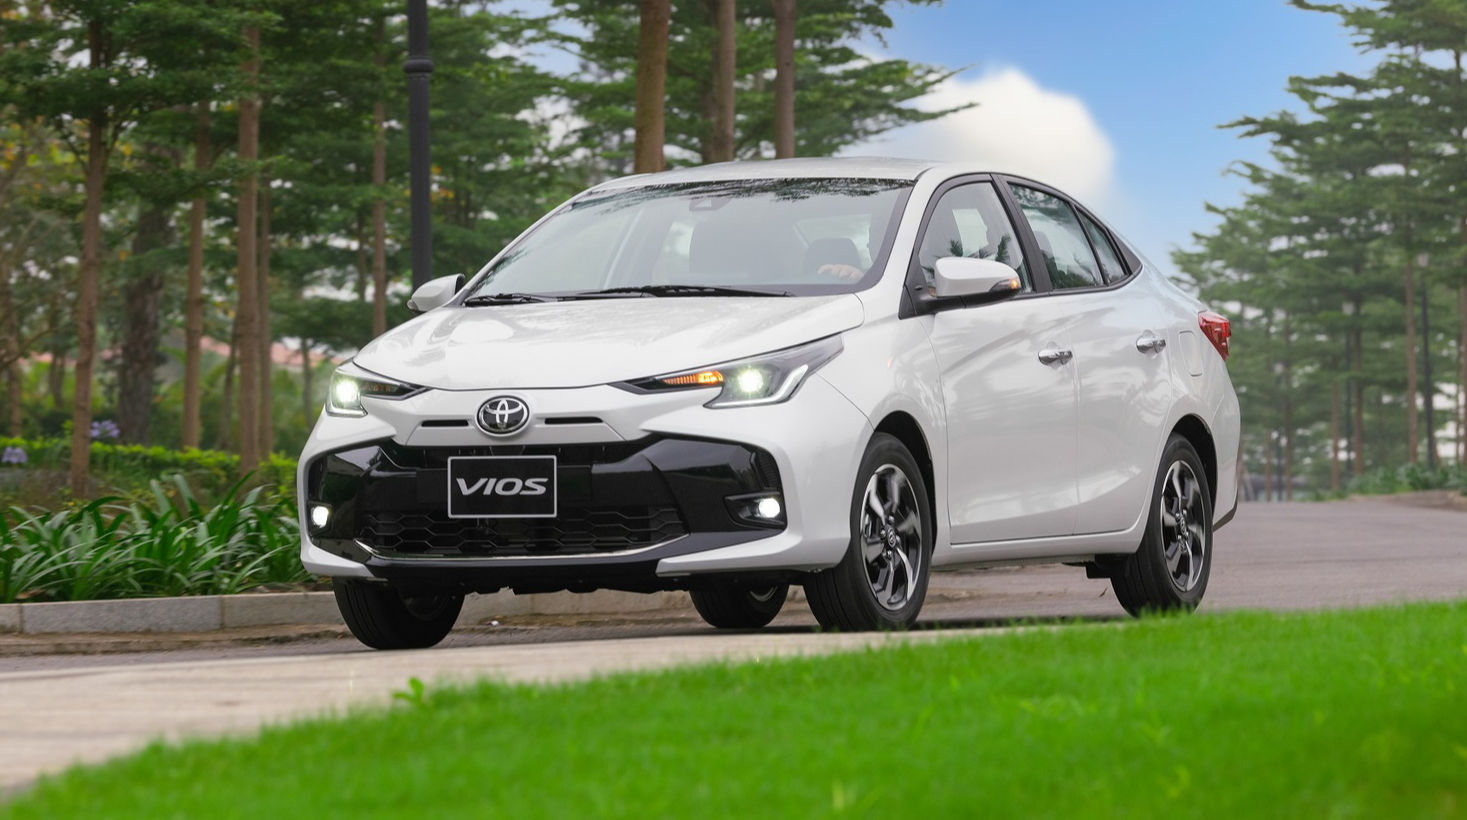 Toyota Vios mới mà cũ, có đủ sức hấp dẫn để đòi lại ngôi vương doanh số?